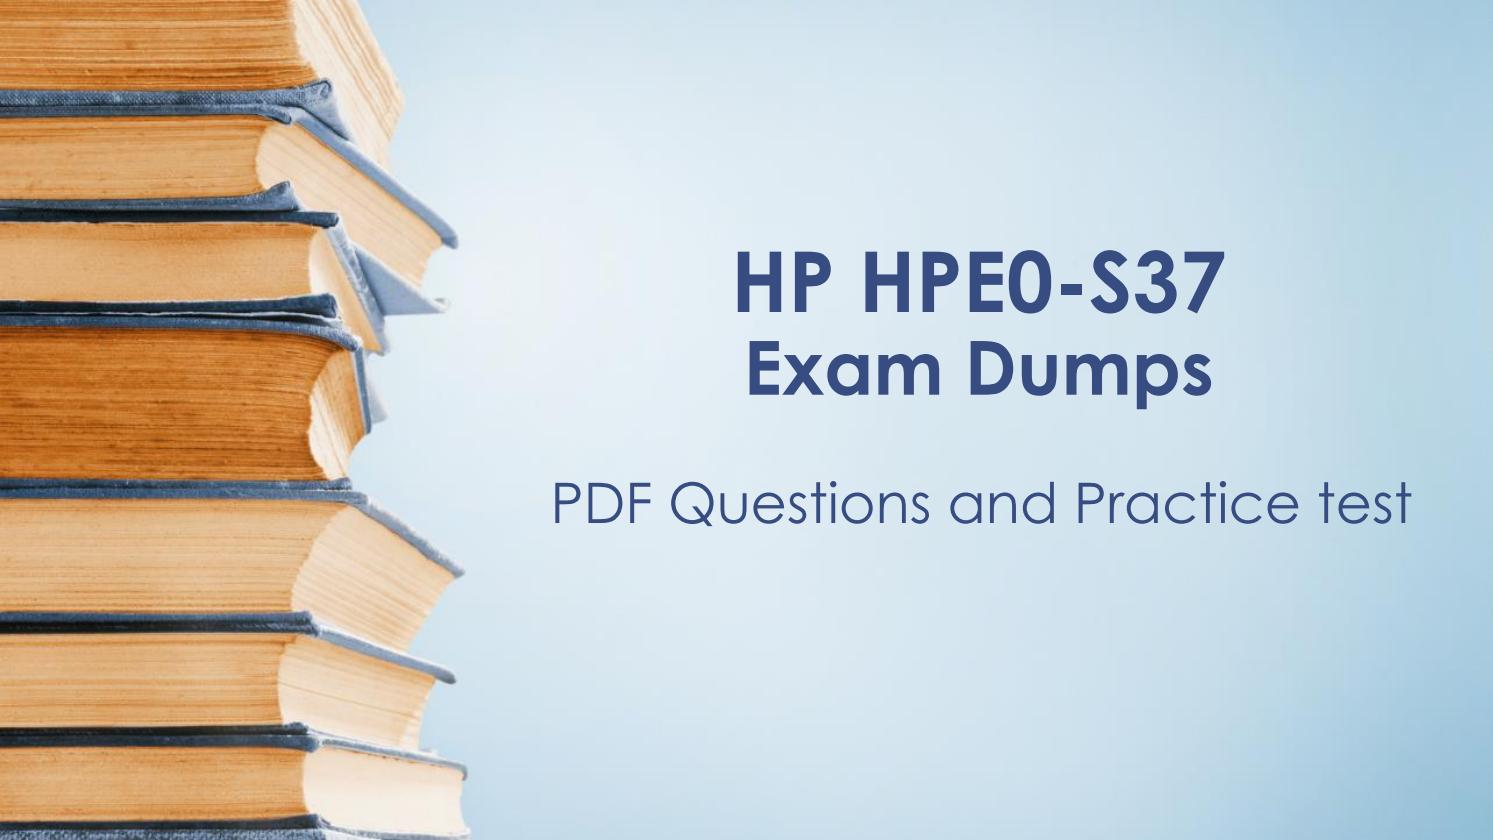 HPE0-S59 Fragenpool & HP HPE0-S59 Vorbereitung - HPE0-S59 Examsfragen